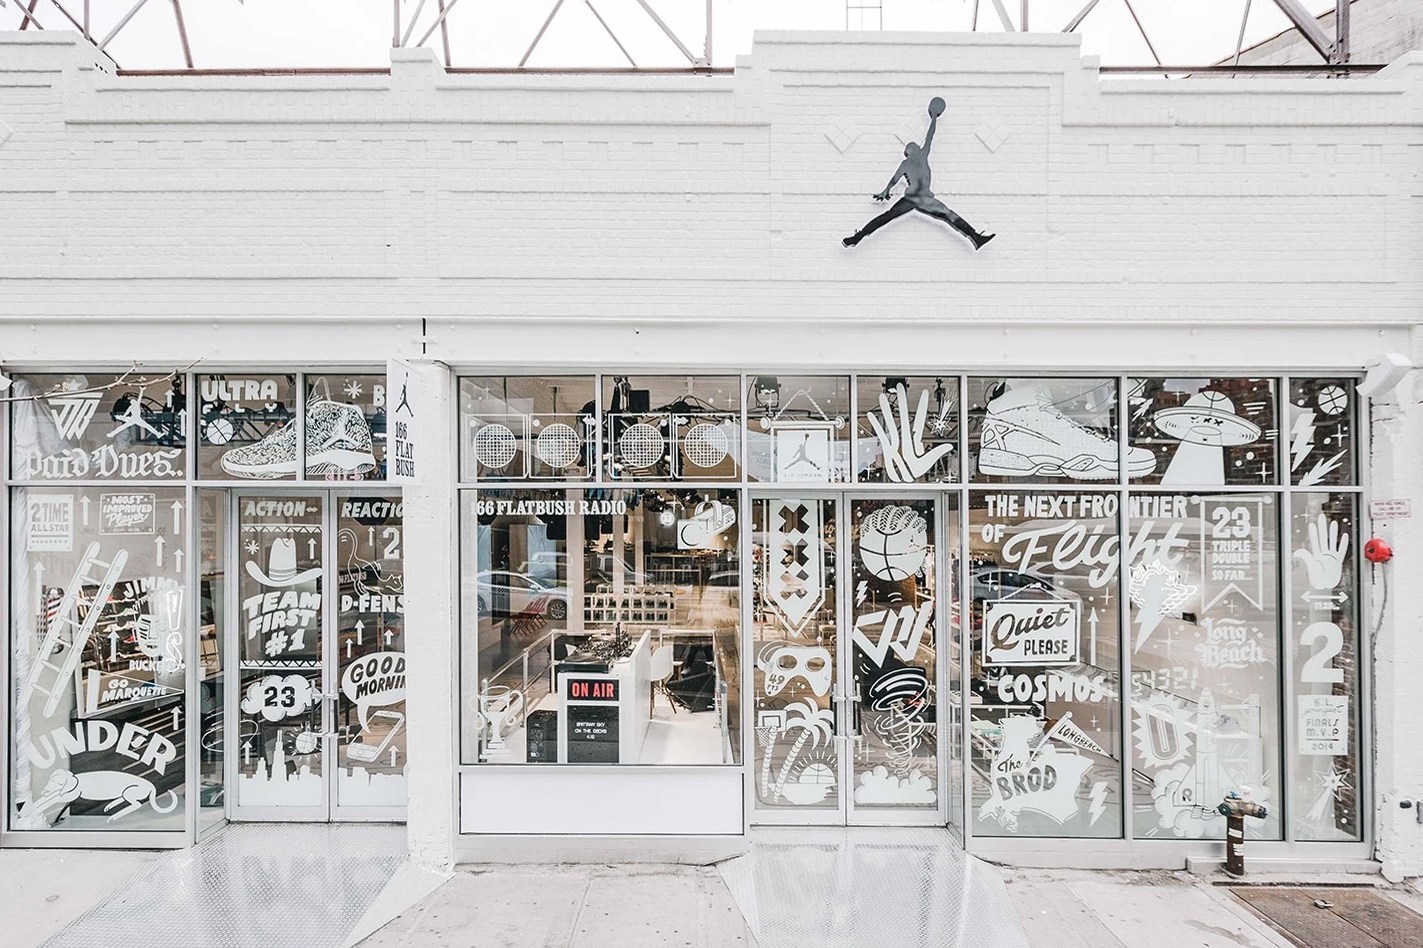 庆祝菁英赛 ‧ Jordan Brand Classic 于布鲁克林开设 Pop-up 期间限定店铺